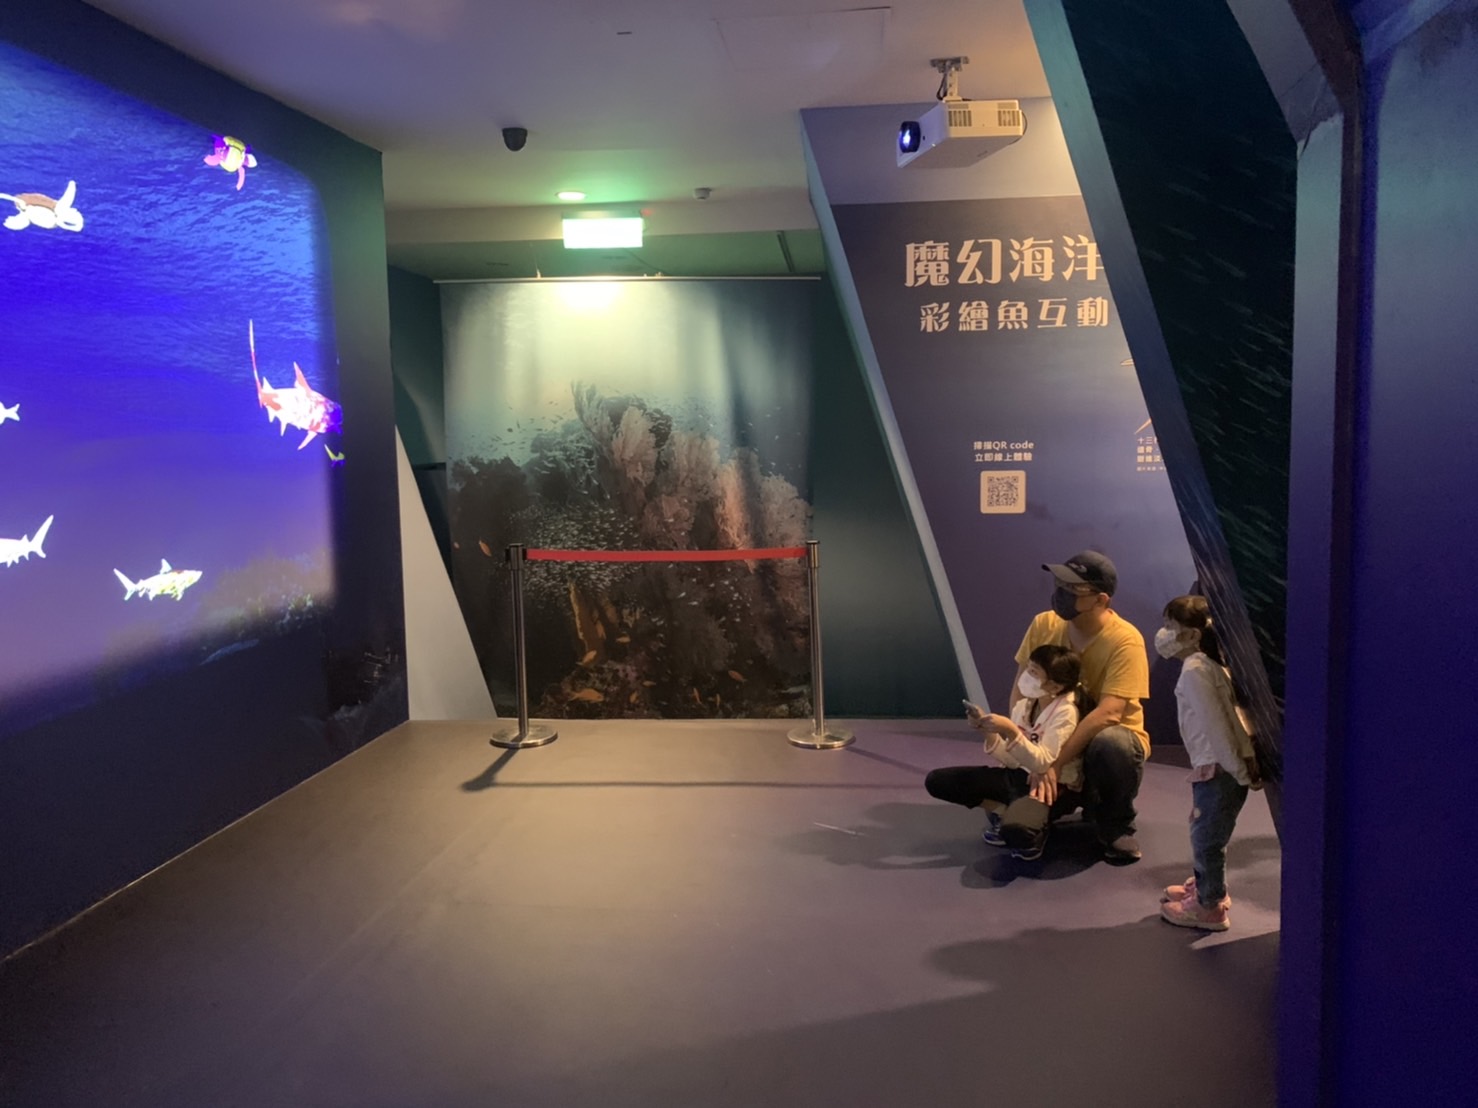 新北市立十三行博物館 「魔幻海洋-彩繪魚互動」-彩繪塗鴉變動畫 3D彩繪魔法 彩繪投影 虛擬實境互動